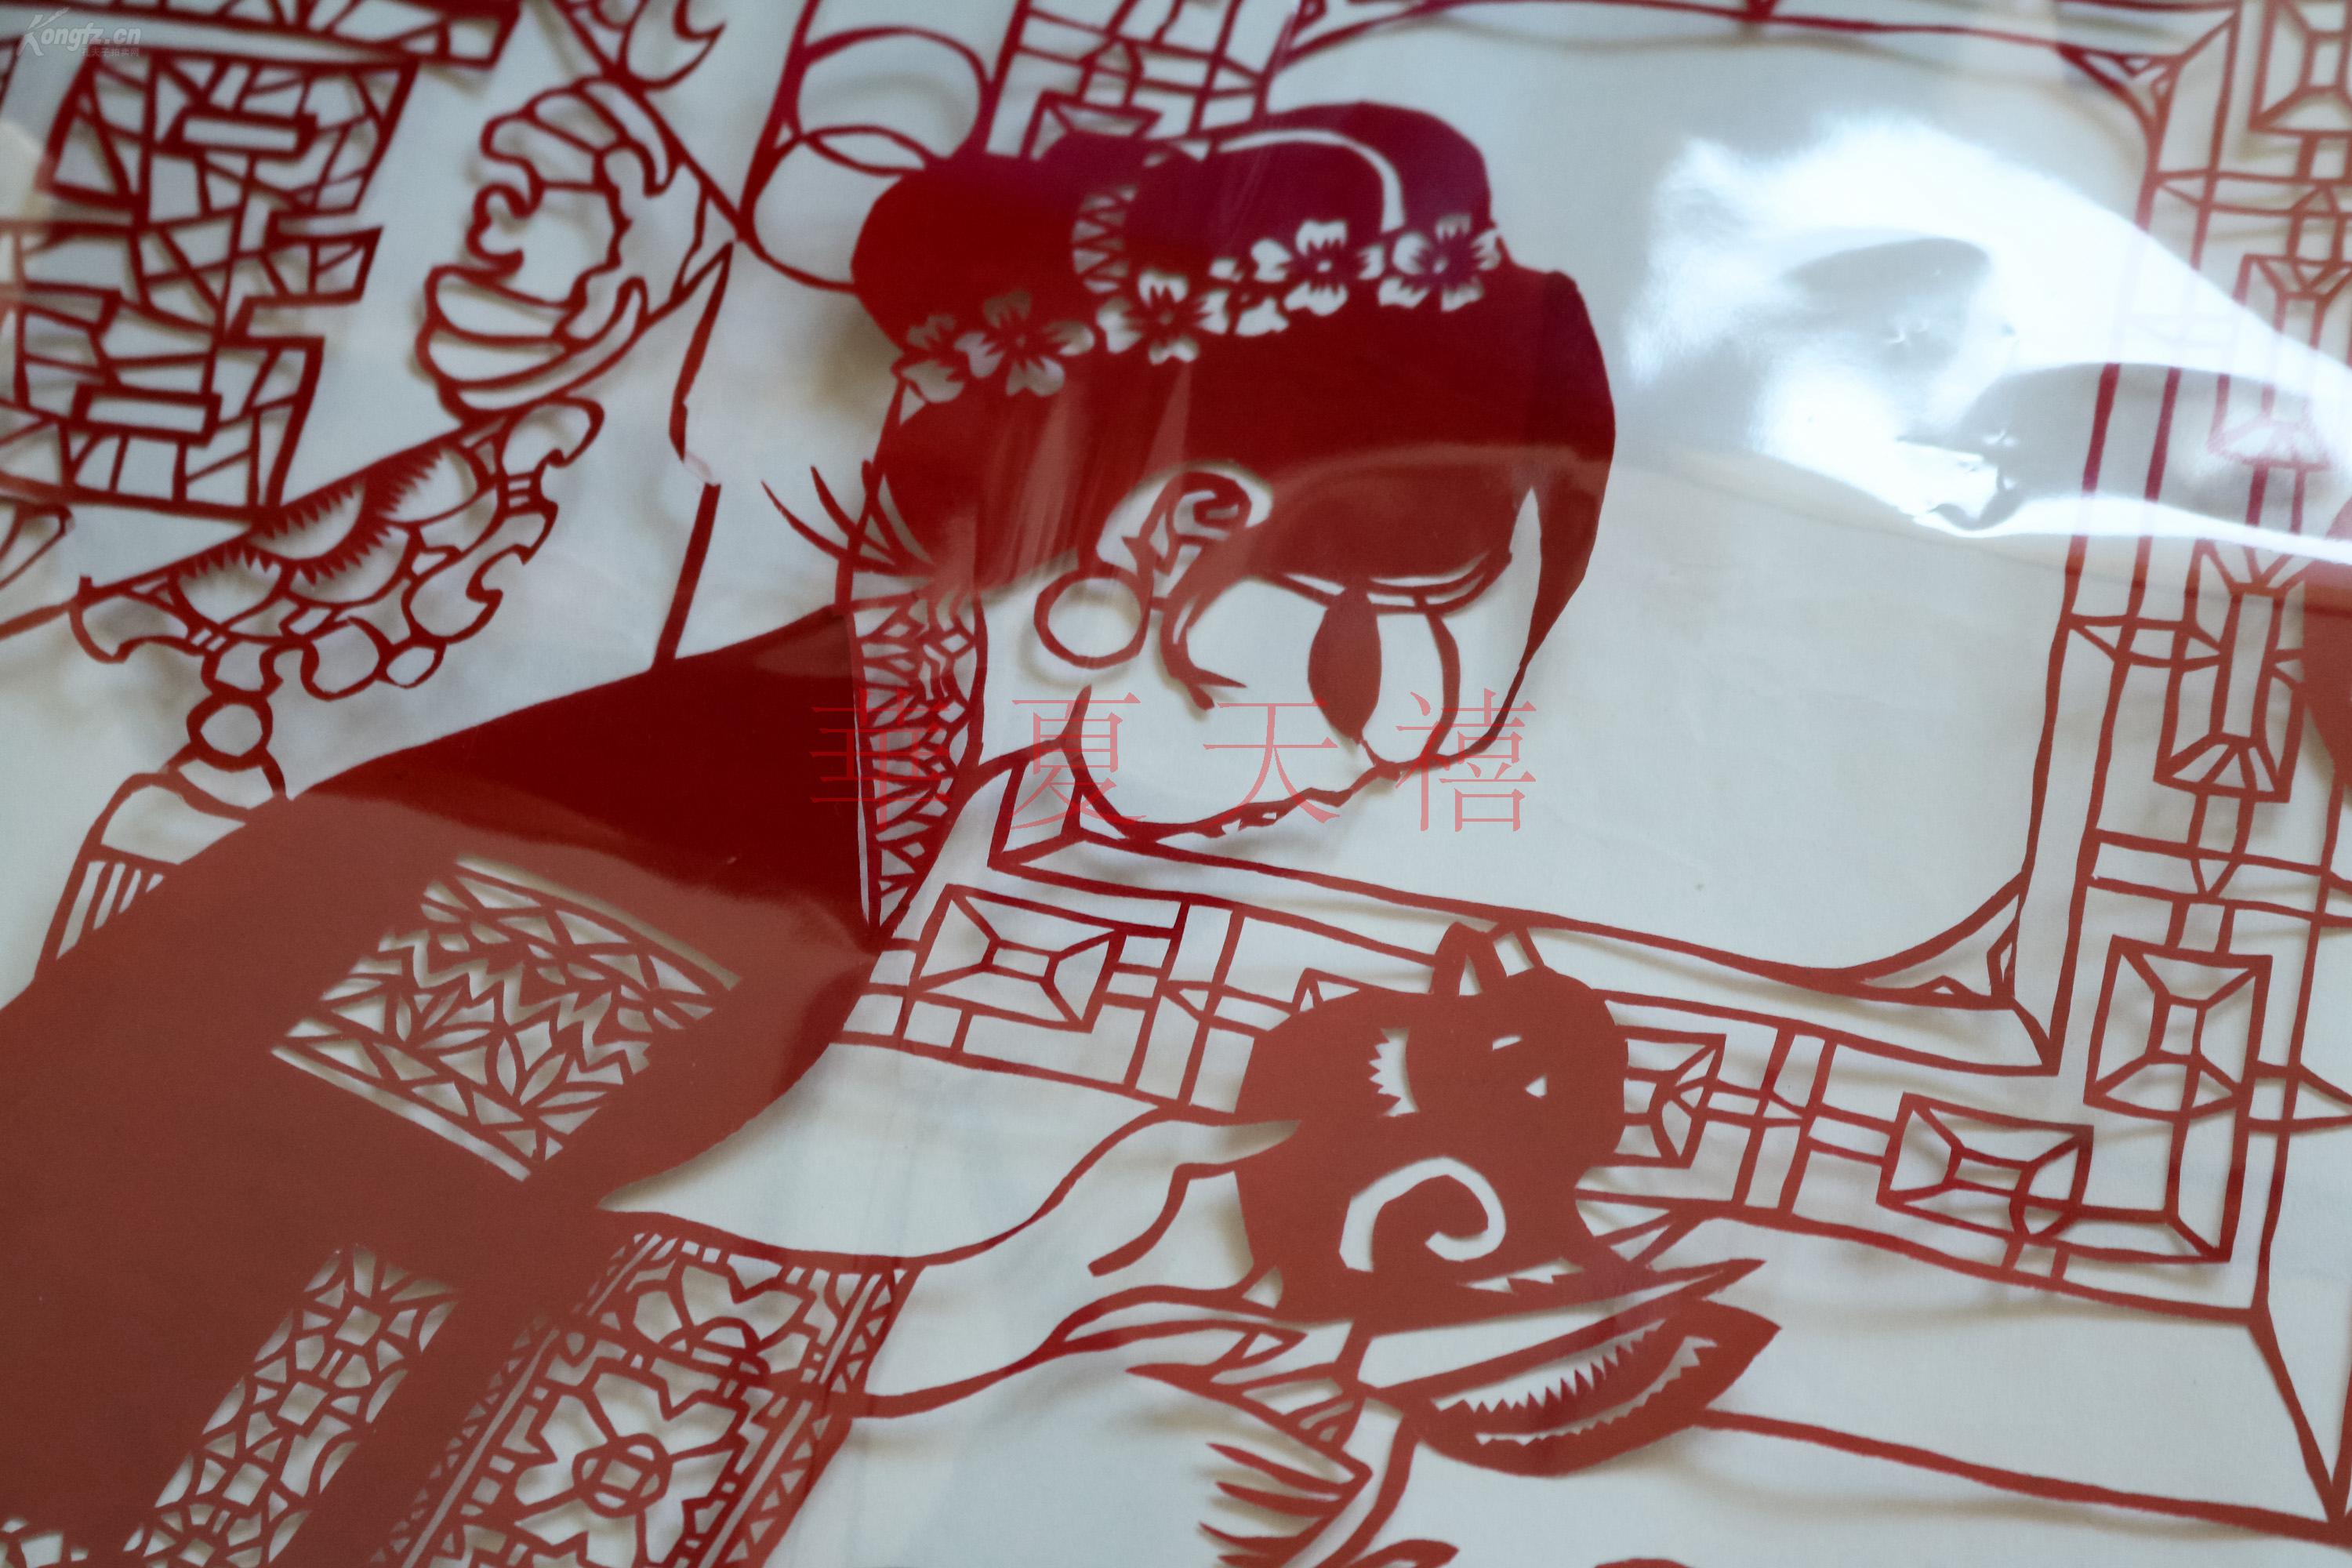 刘卫平剪纸艺术作品: 著名剪纸艺术家 刘卫平《贴窗花